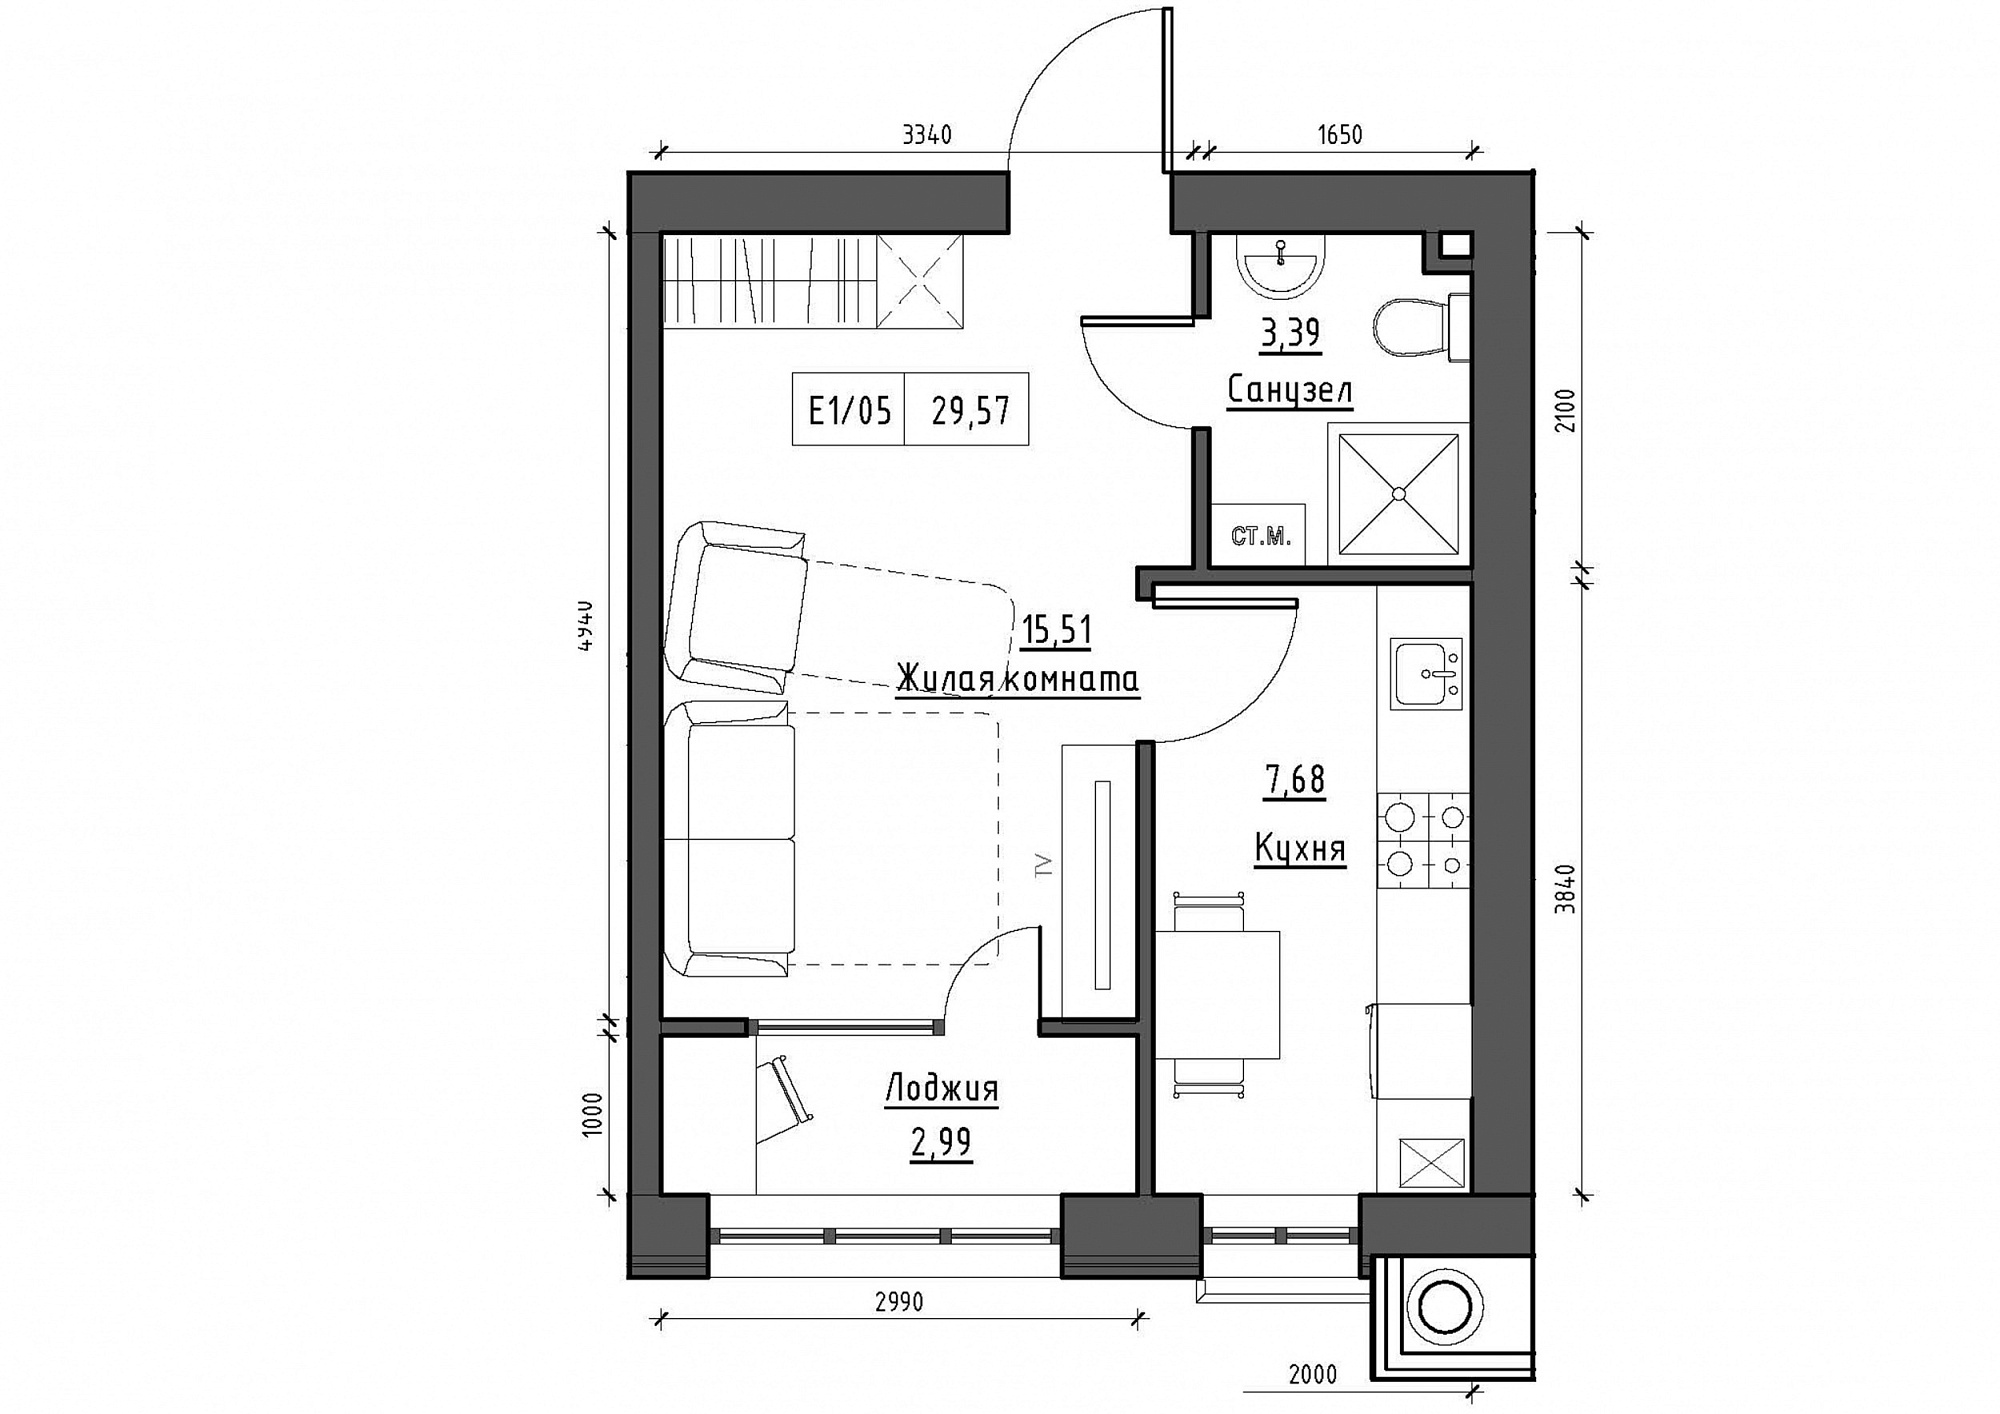 Планировка 1-к квартира площей 29.57м2, KS-012-01/0006.